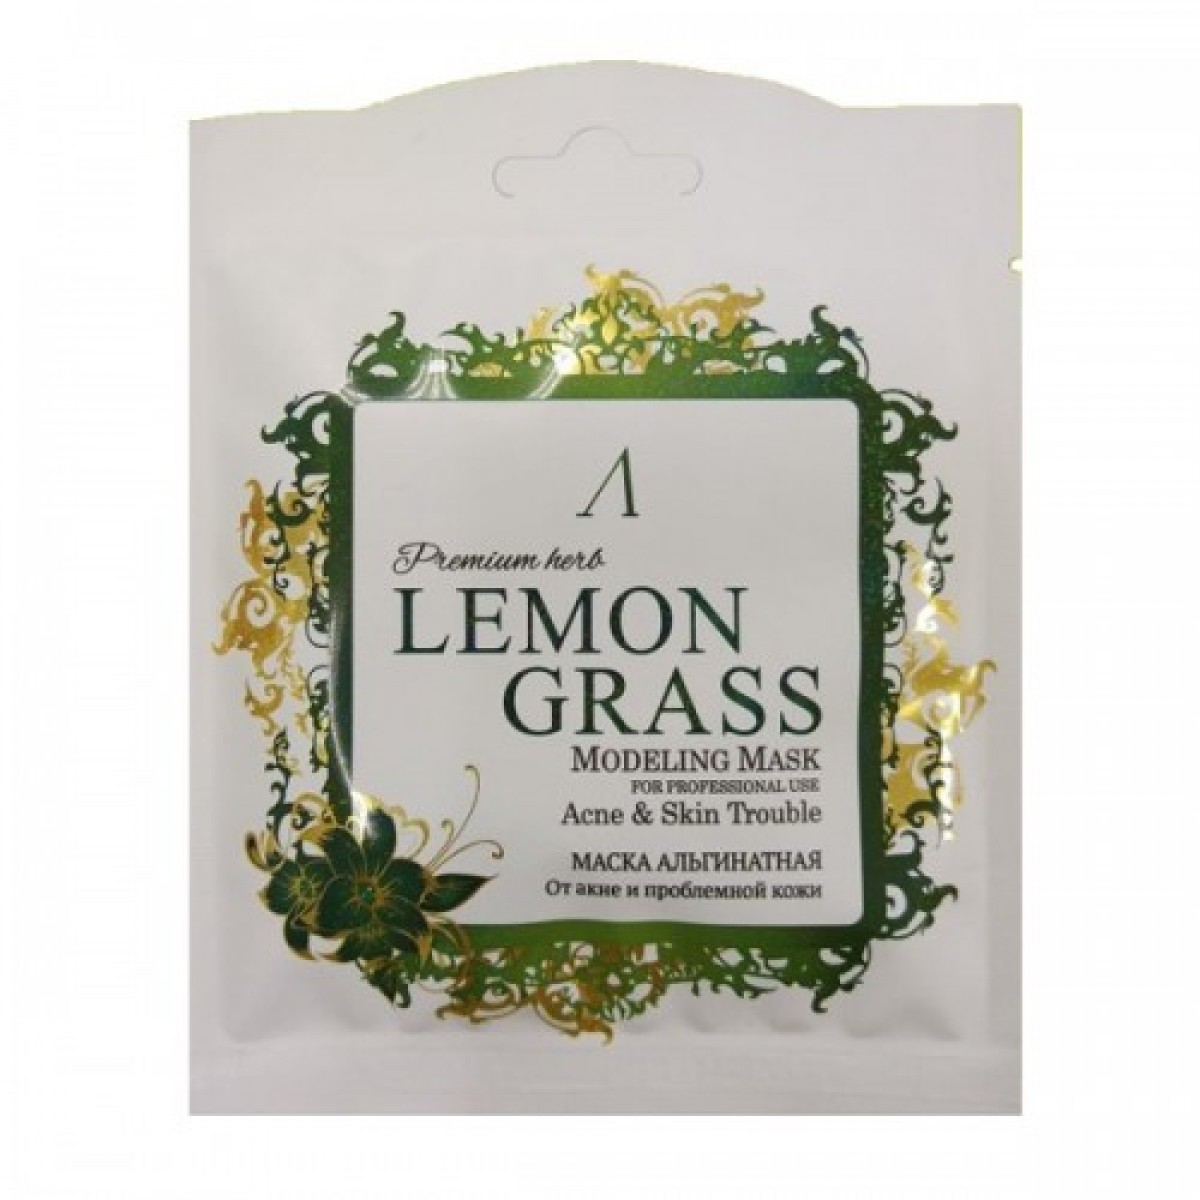 Маска альгинатная Anskin Premium Herb Lemongrass Modeling Mask 25 г